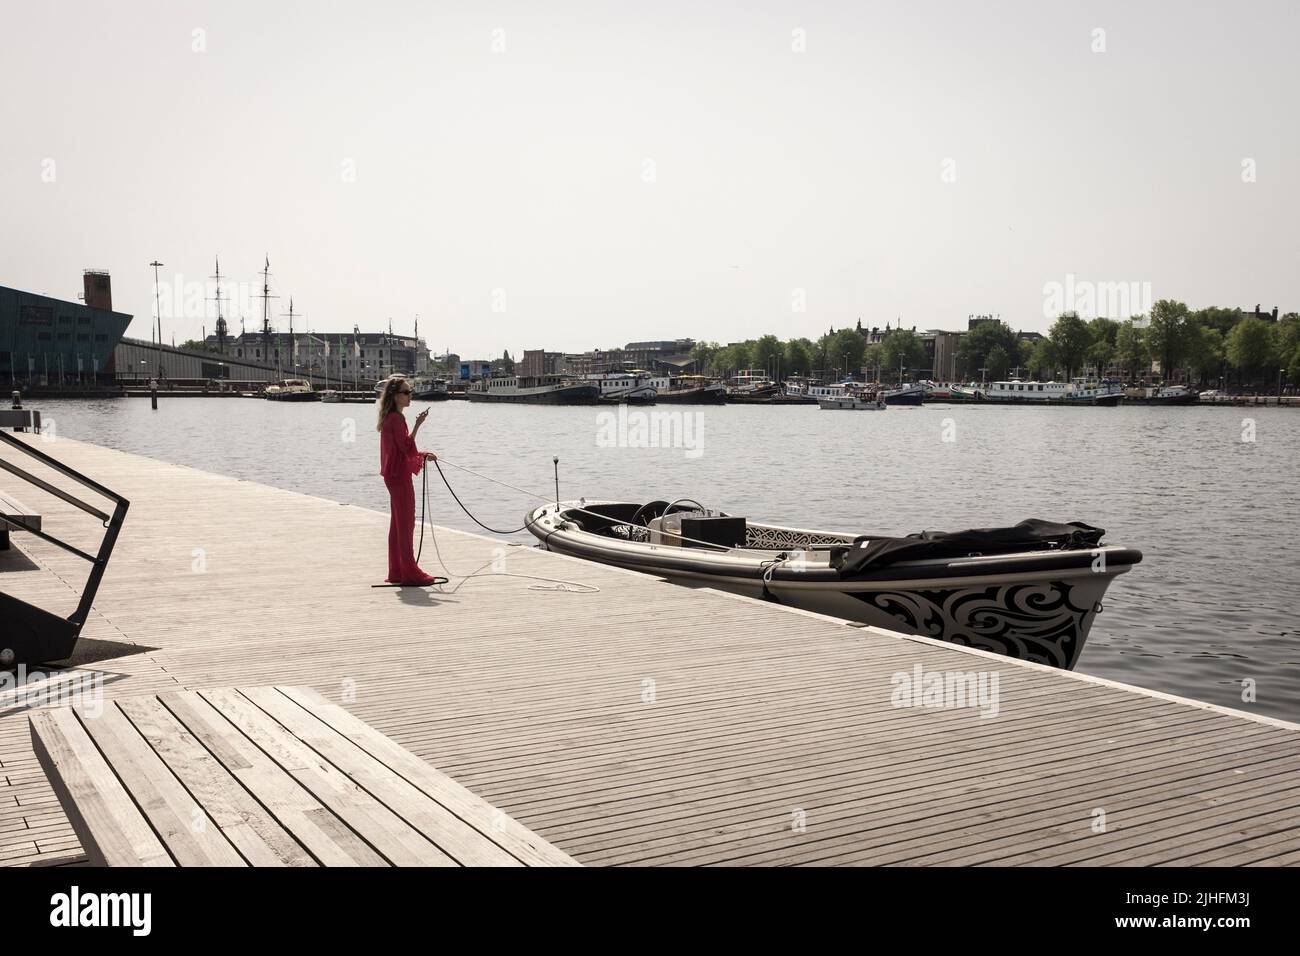 Eine Frau überprüft ihr Telefon, während sie an einem heißen und sonnigen Tag in Amsterdam, Niederlande, die Anlegestelle eines Motorbootes an einem Kanal hält. Stockfoto